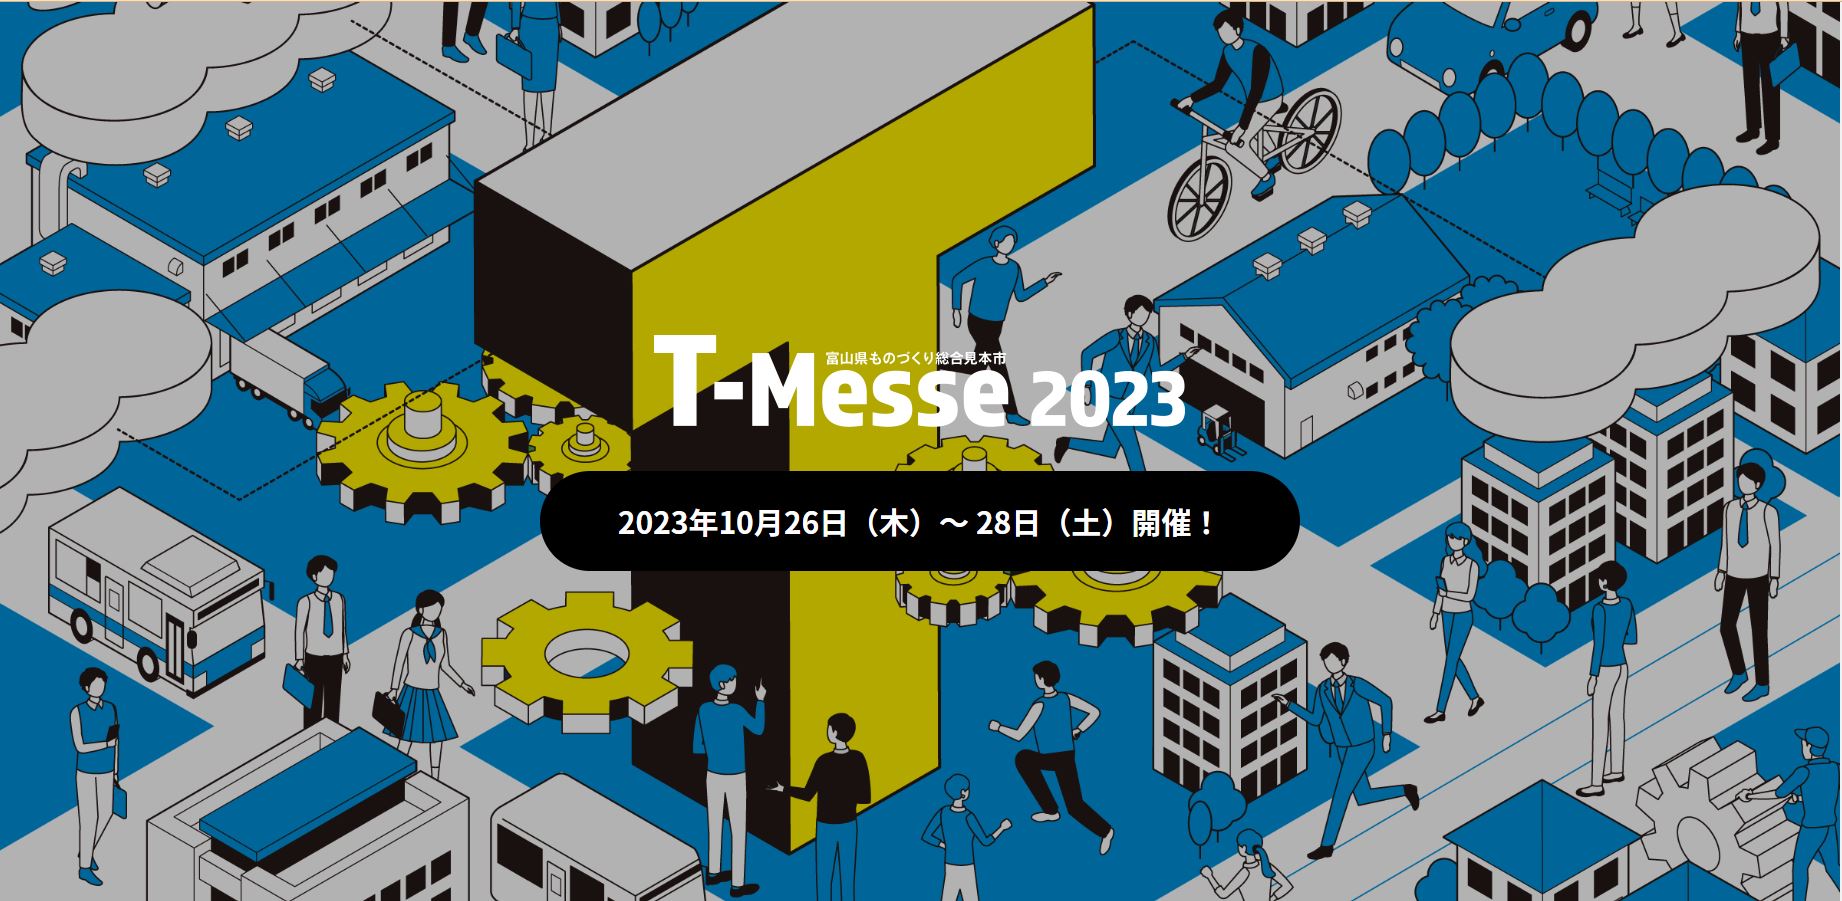 「Messe2023富山県ものづくり総合見本市」に出展します